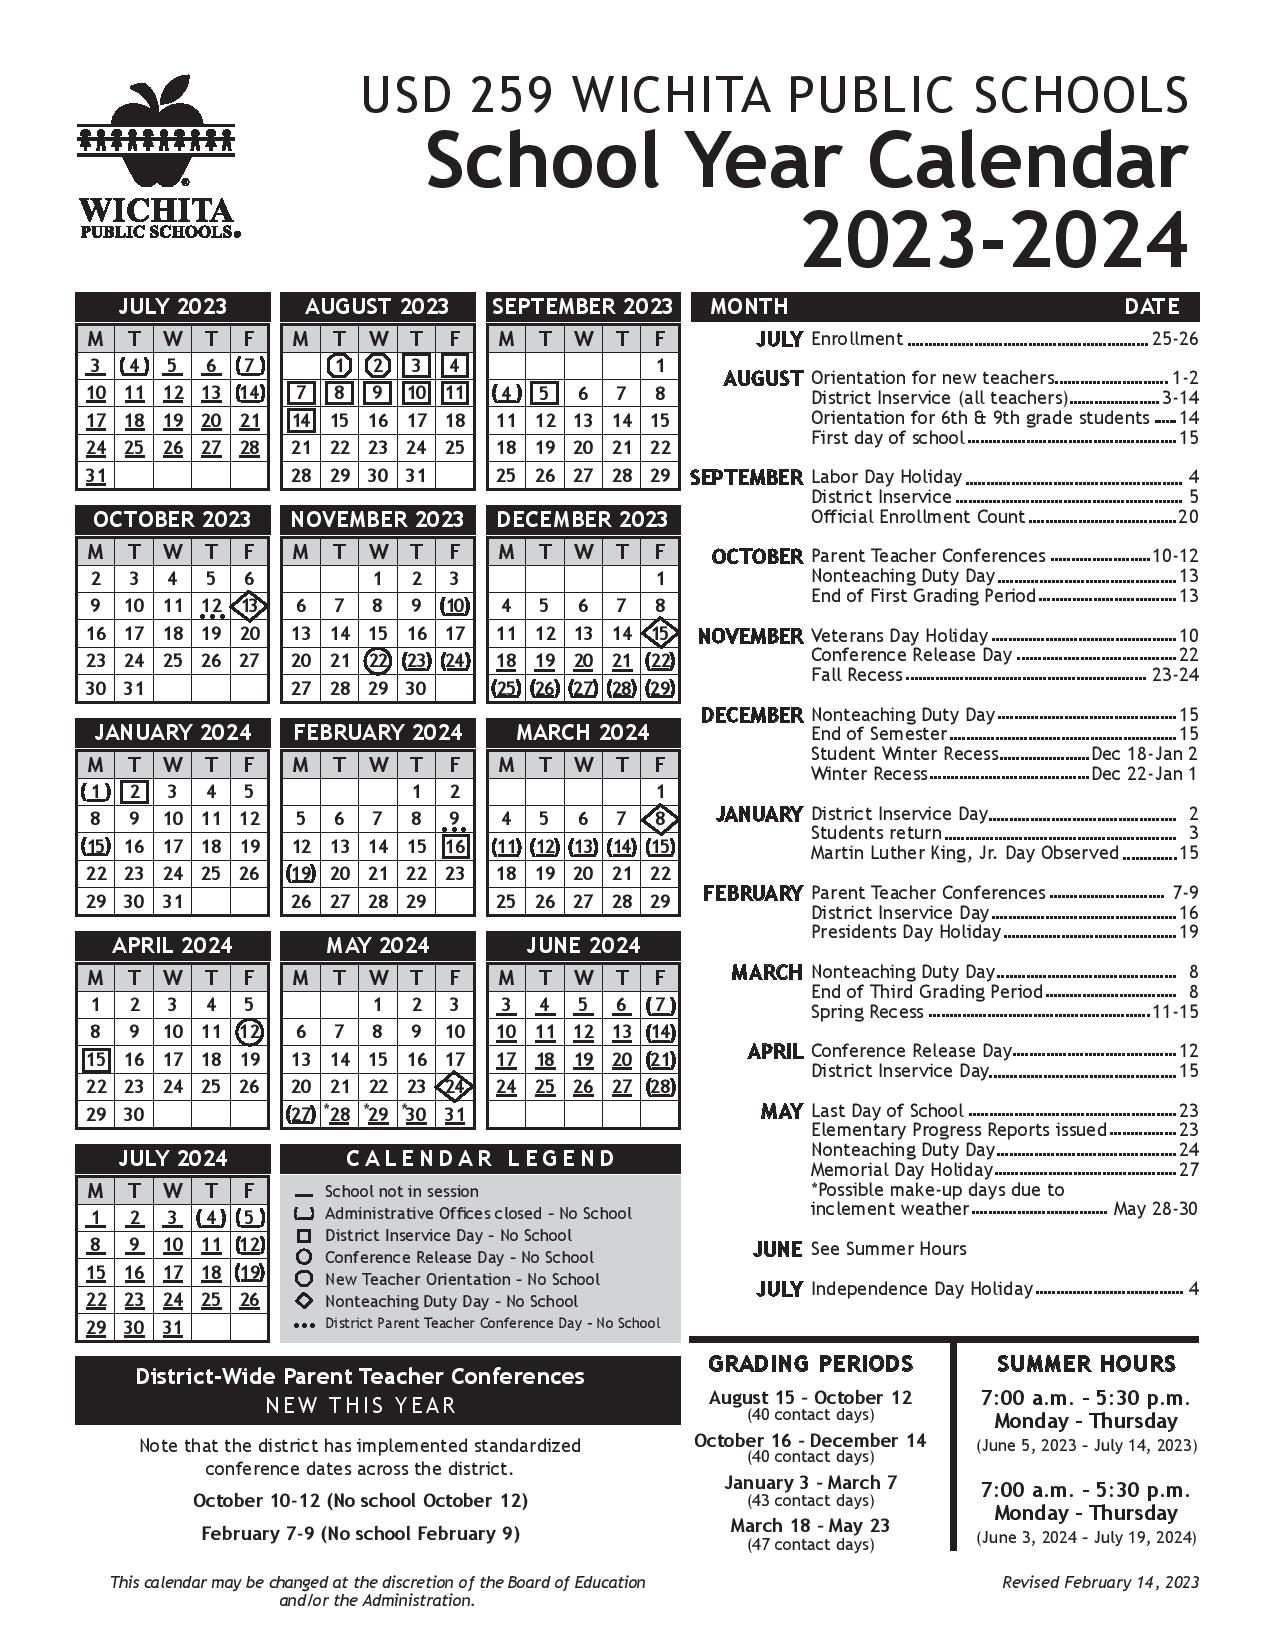 Wichita Public Schools Calendar 20232024 in PDF